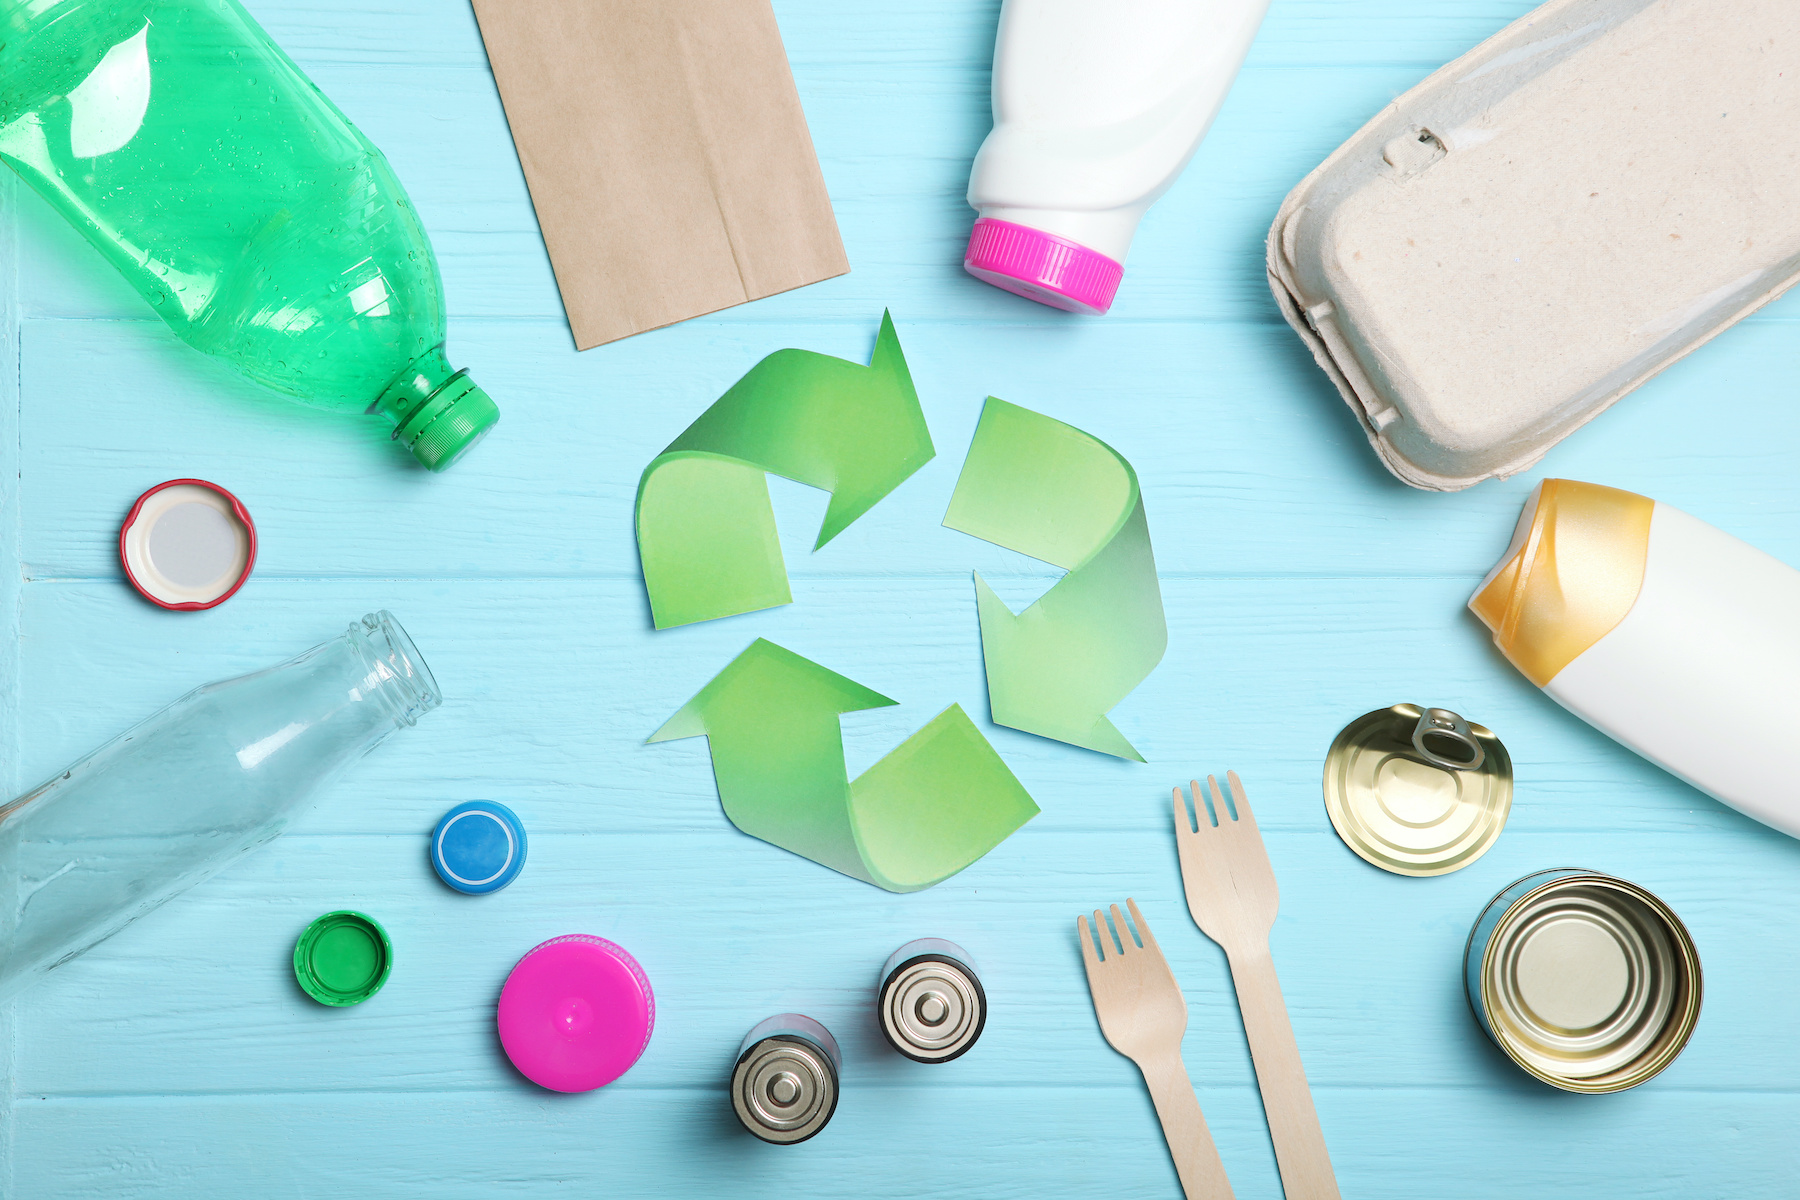 Le plastique est-il réellement recyclé ? © White bear studio, Adobe Stock